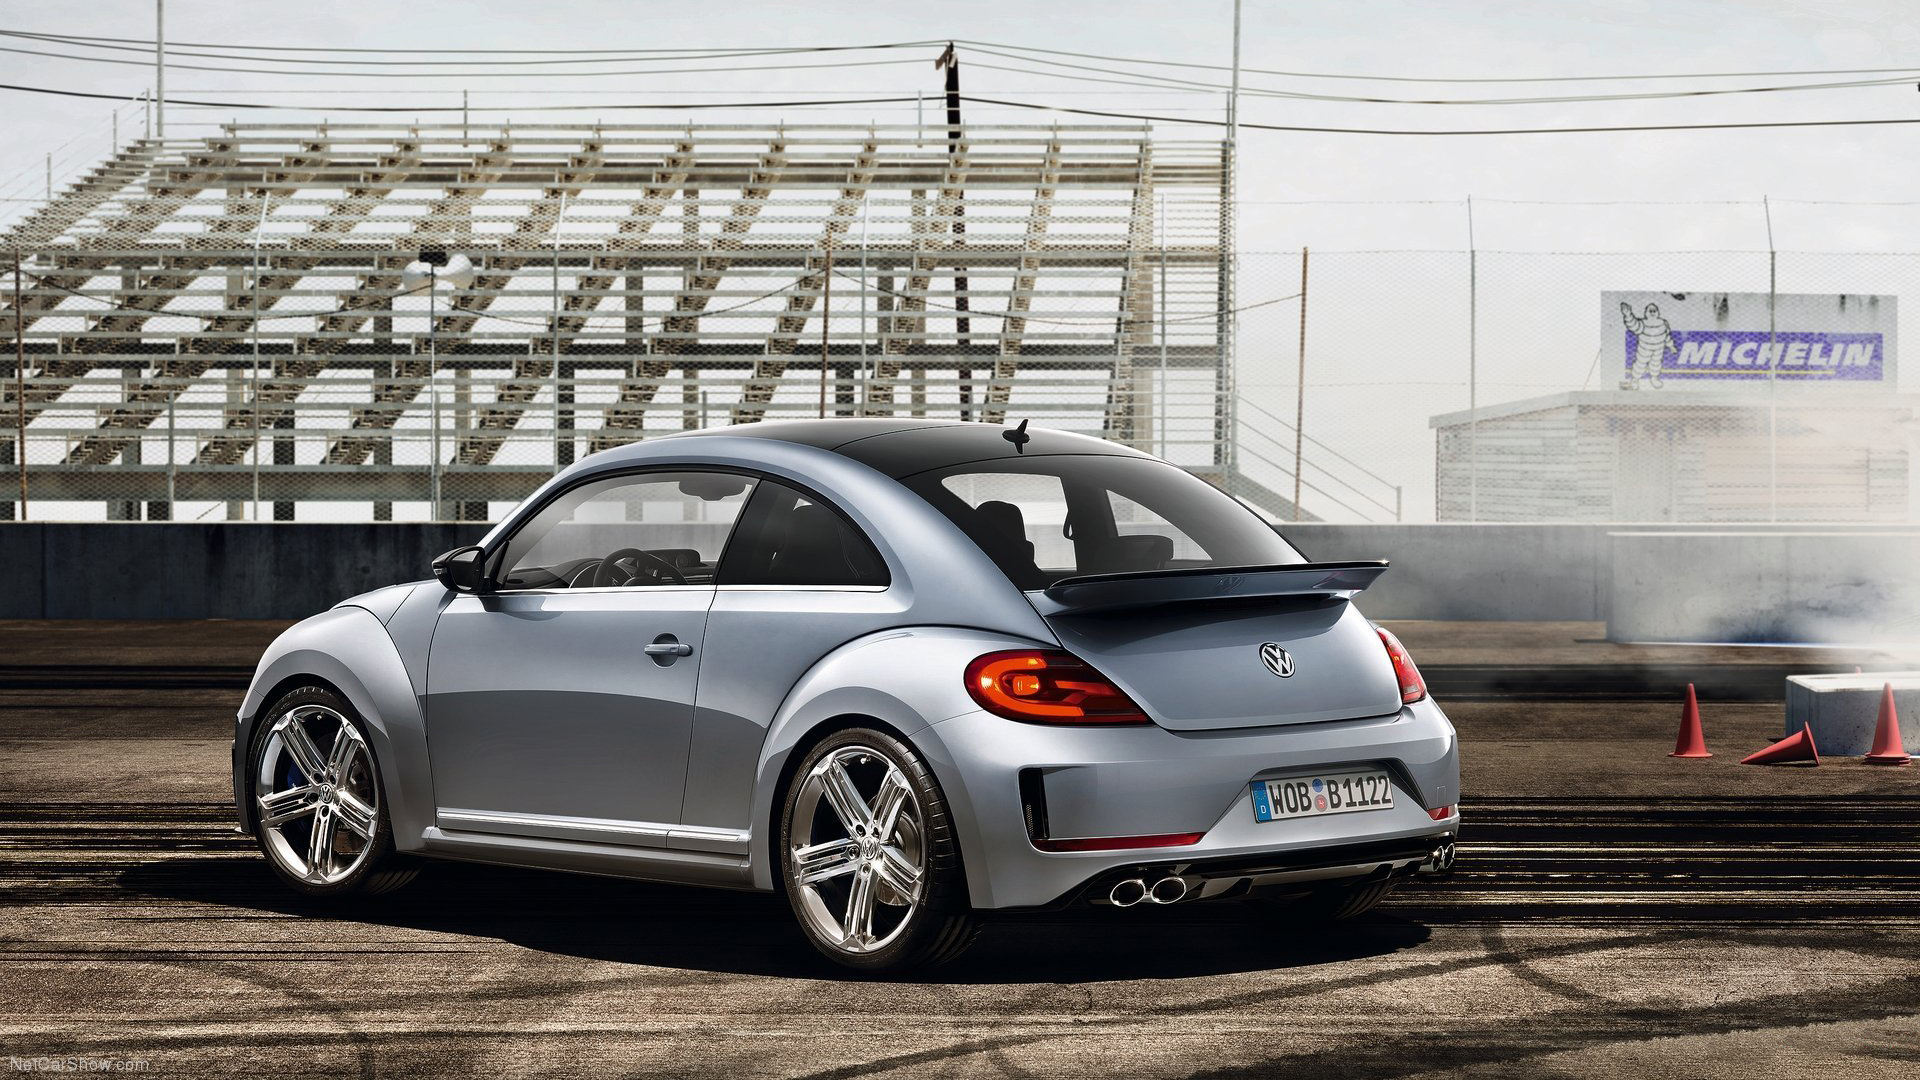  2011 Volkswagen Beetle R Concept Wallpaper.